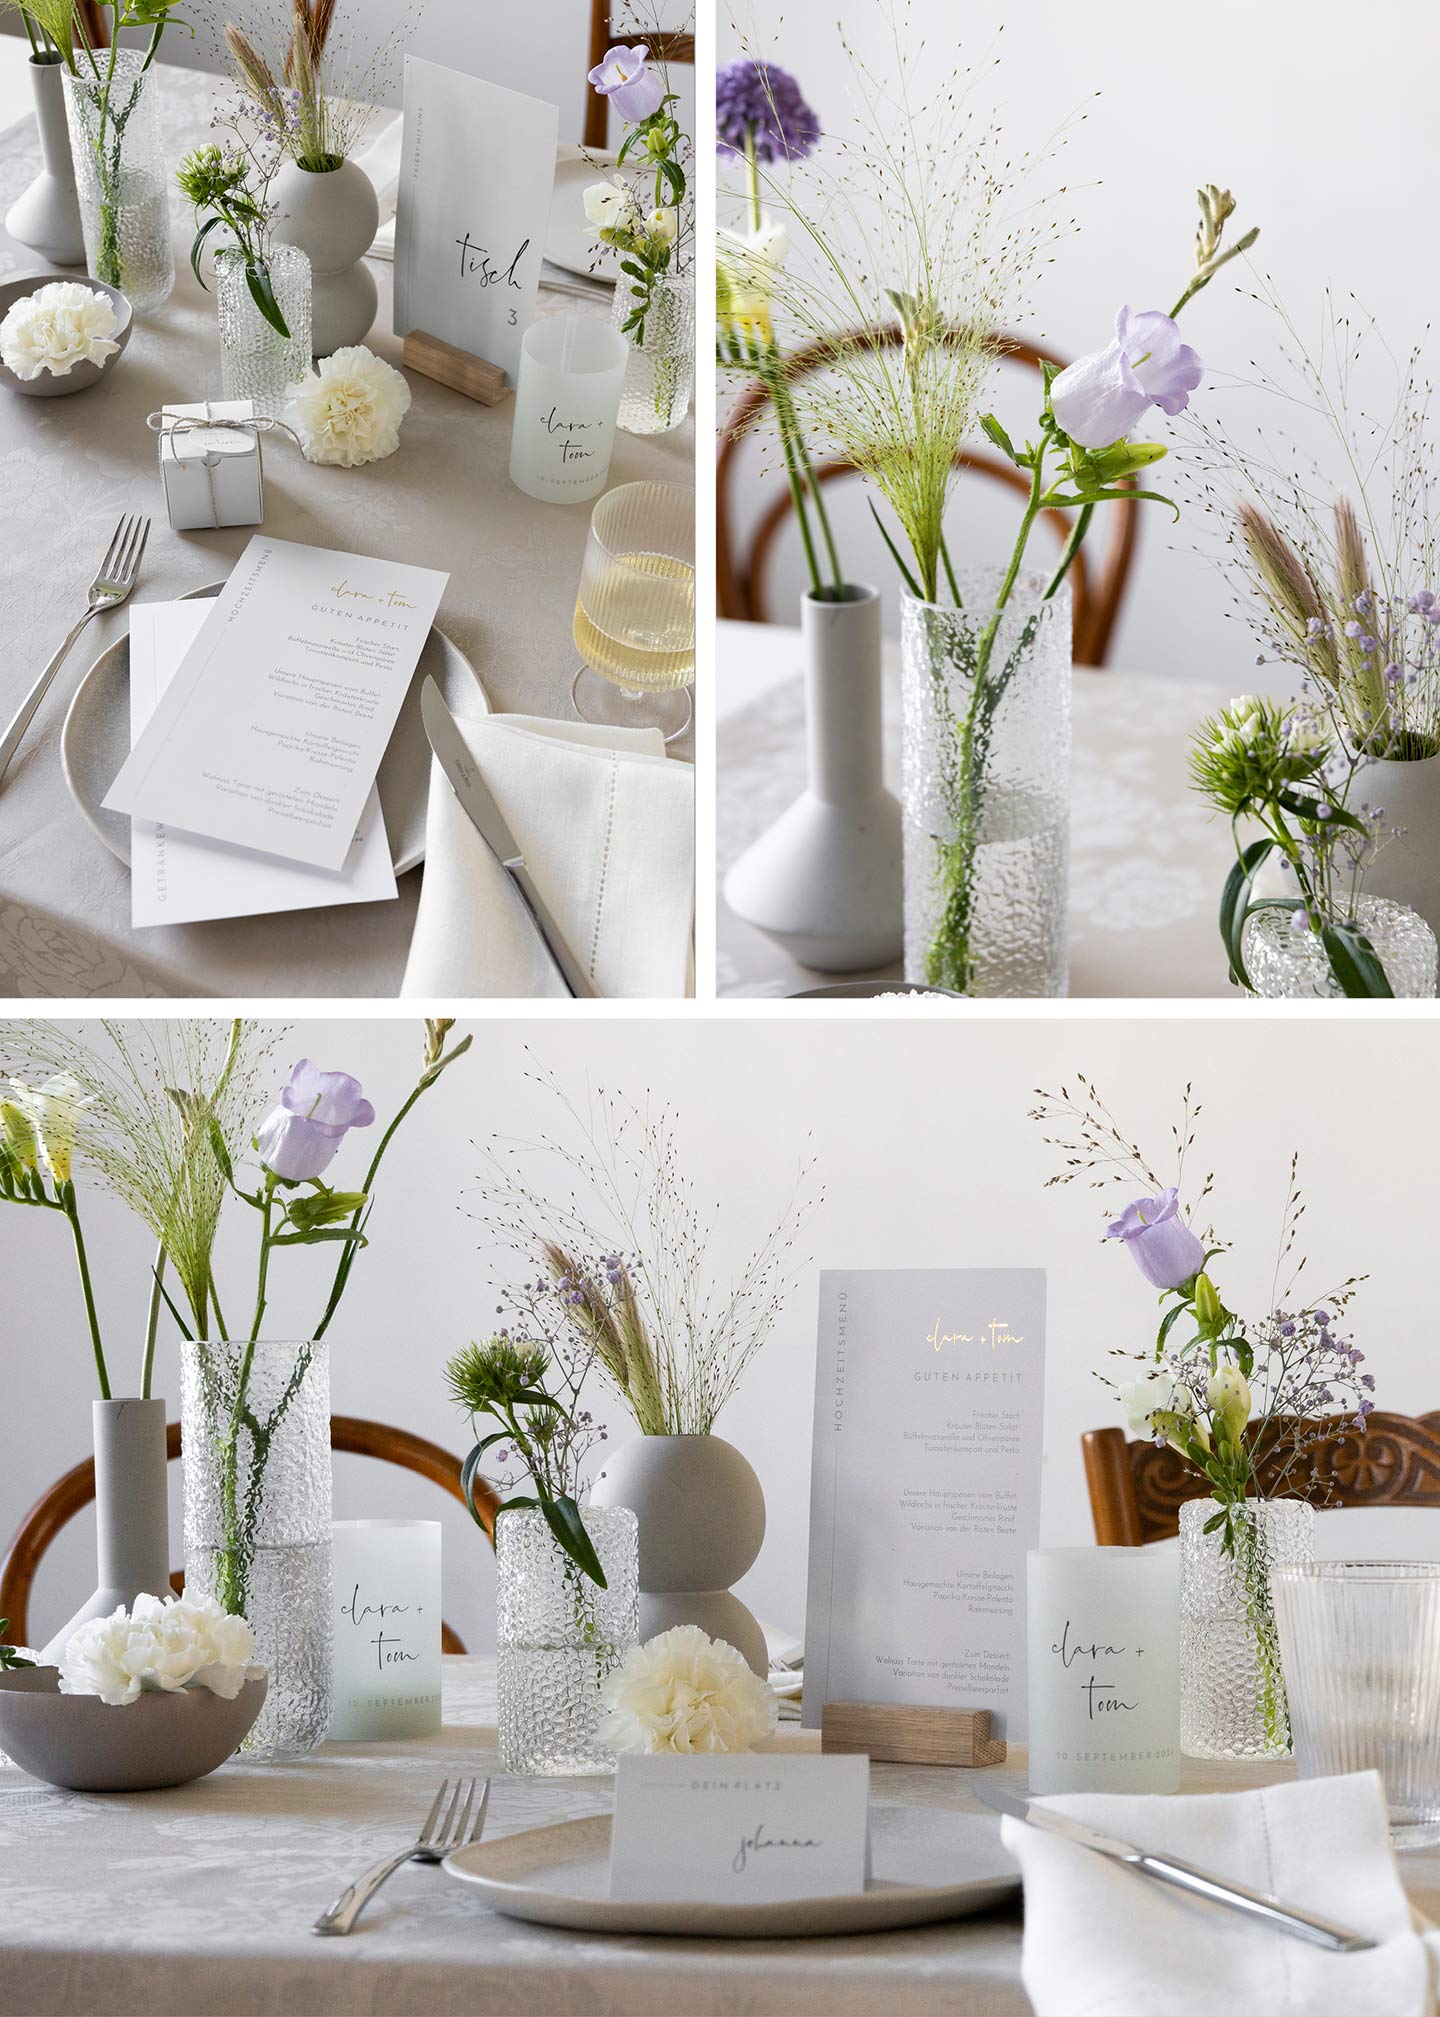  Dekorierter Hochzeitstisch im Greenery Look mit Farbtupfern durch lila Blumen